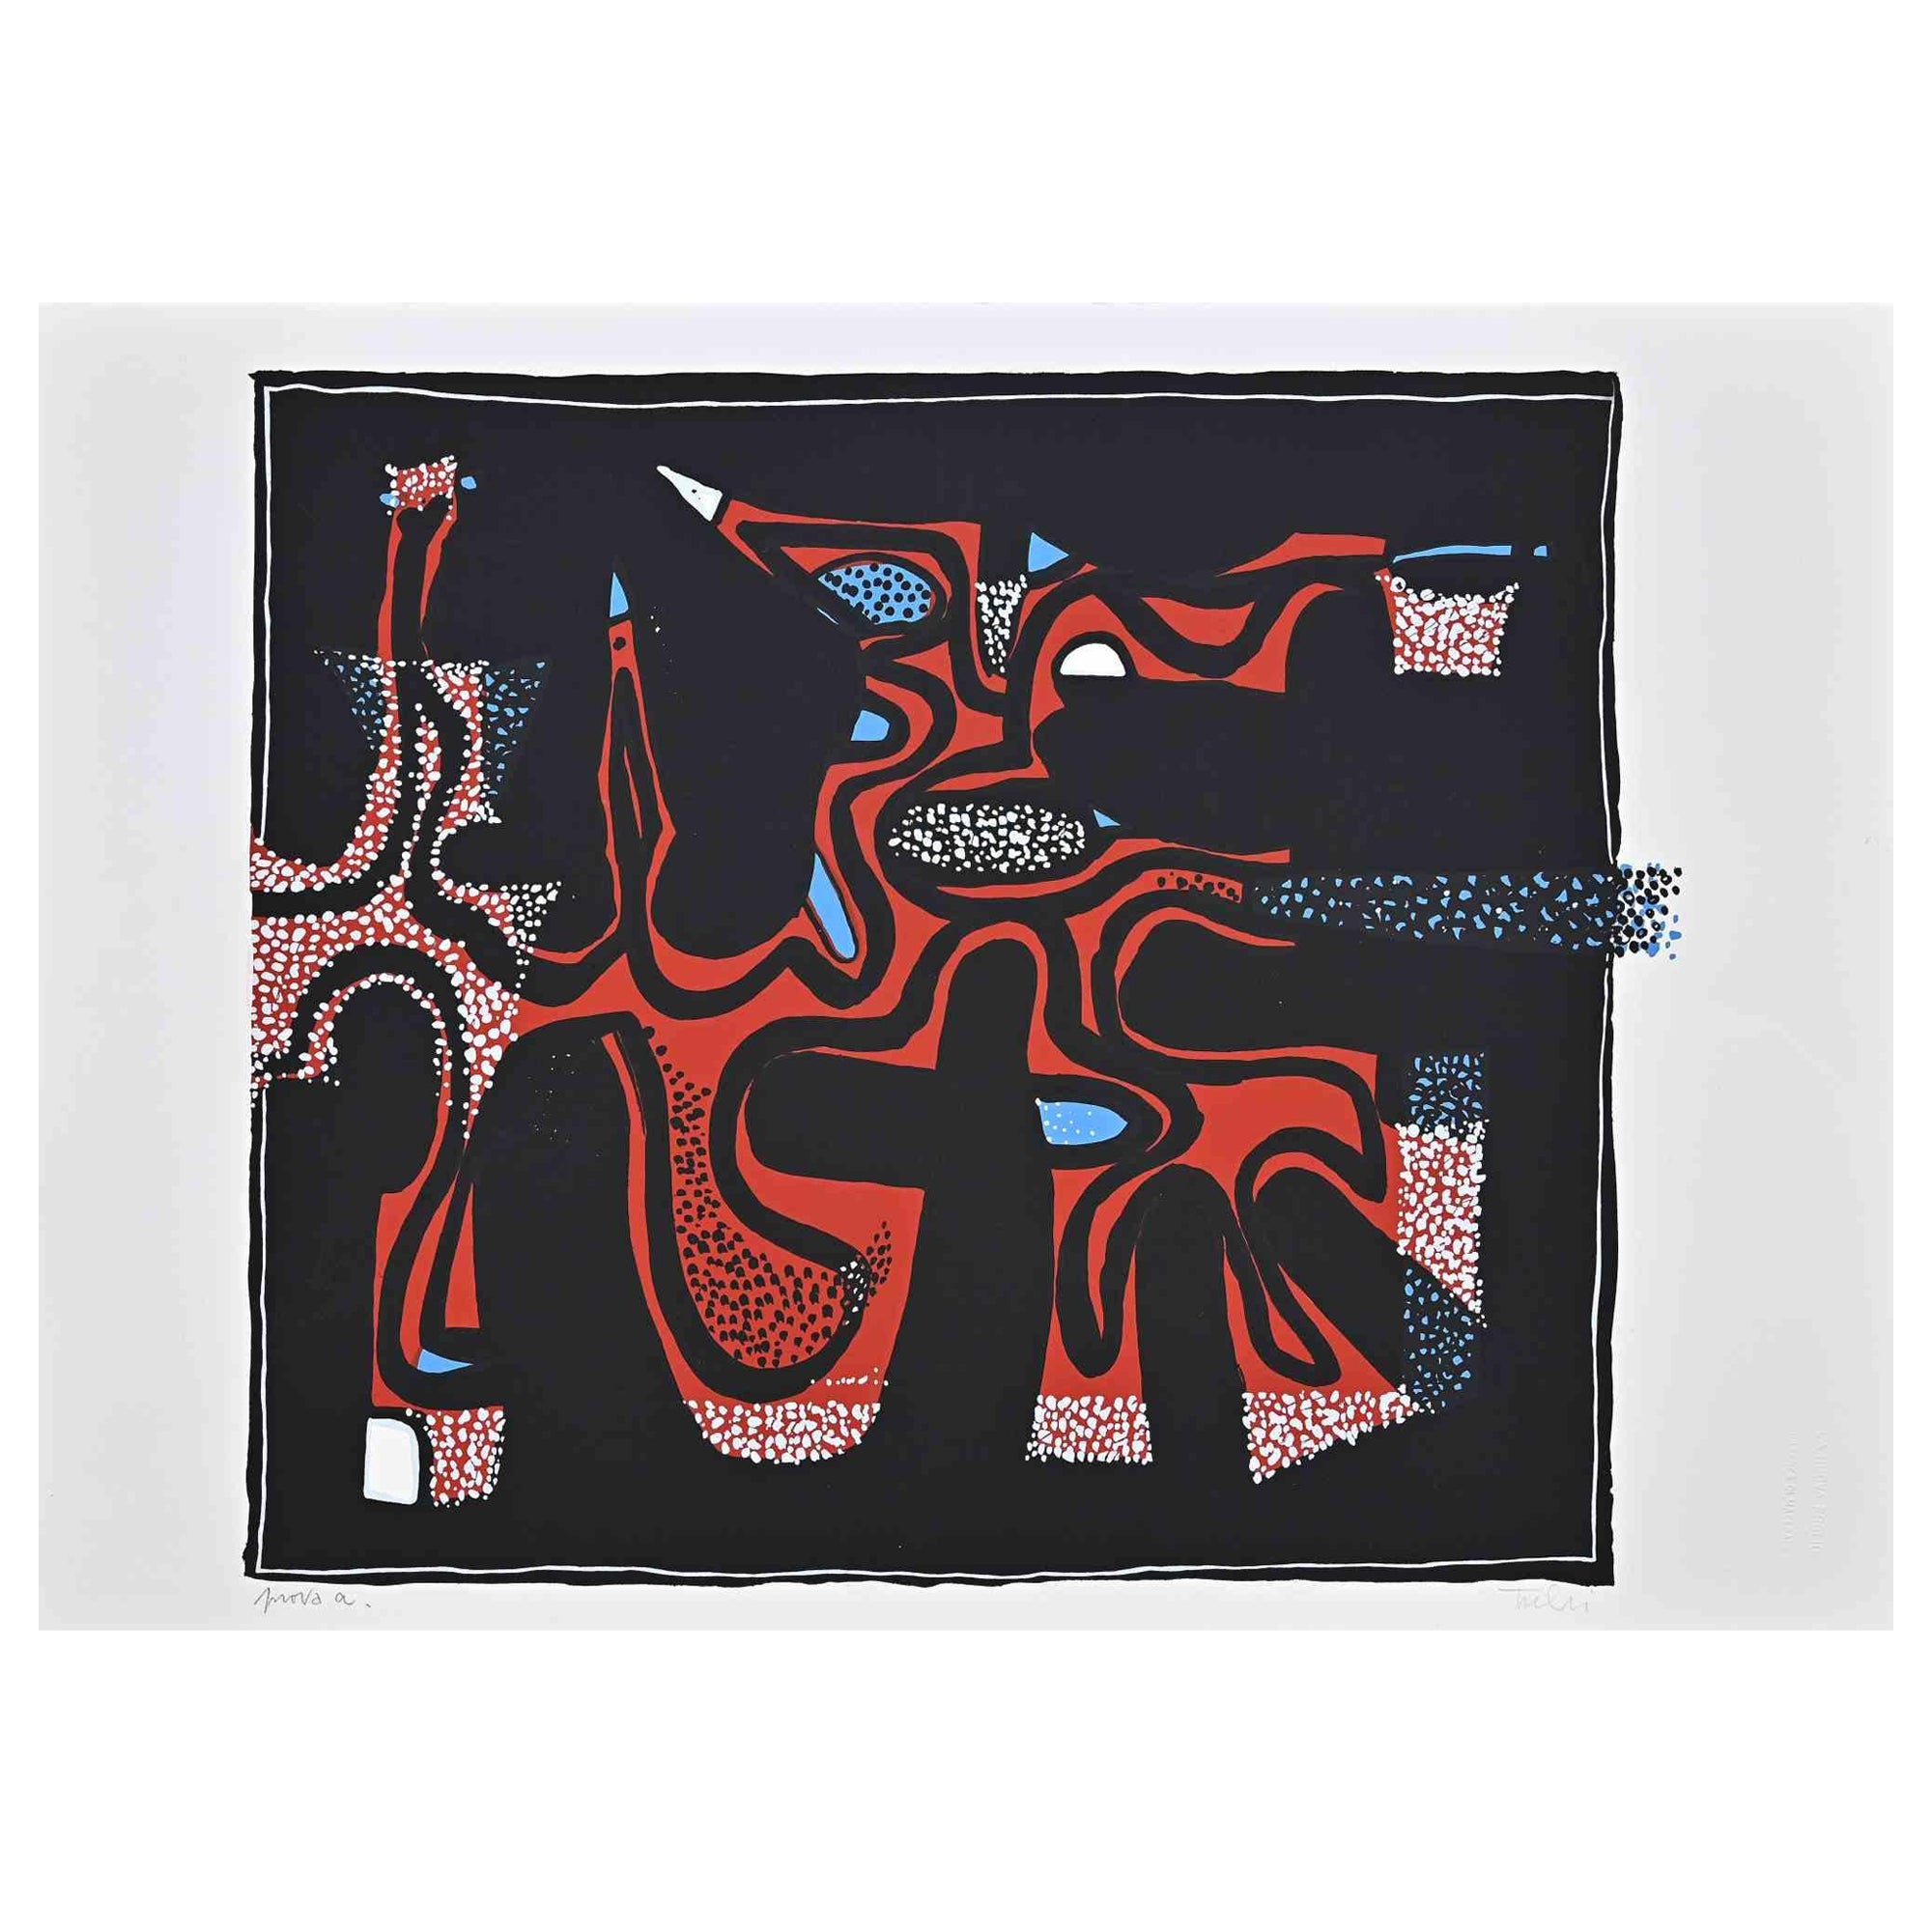 Abstrakte Komposition ist ein farbiger Siebdruck auf Papier, der in den 1970er Jahren von dem italienischen Künstler Wladimiro Tulli realisiert wurde.
Rechts unten handsigniert.

Der Beweis des Künstlers.

Gute Bedingungen.

Ein schönes Kunstwerk,